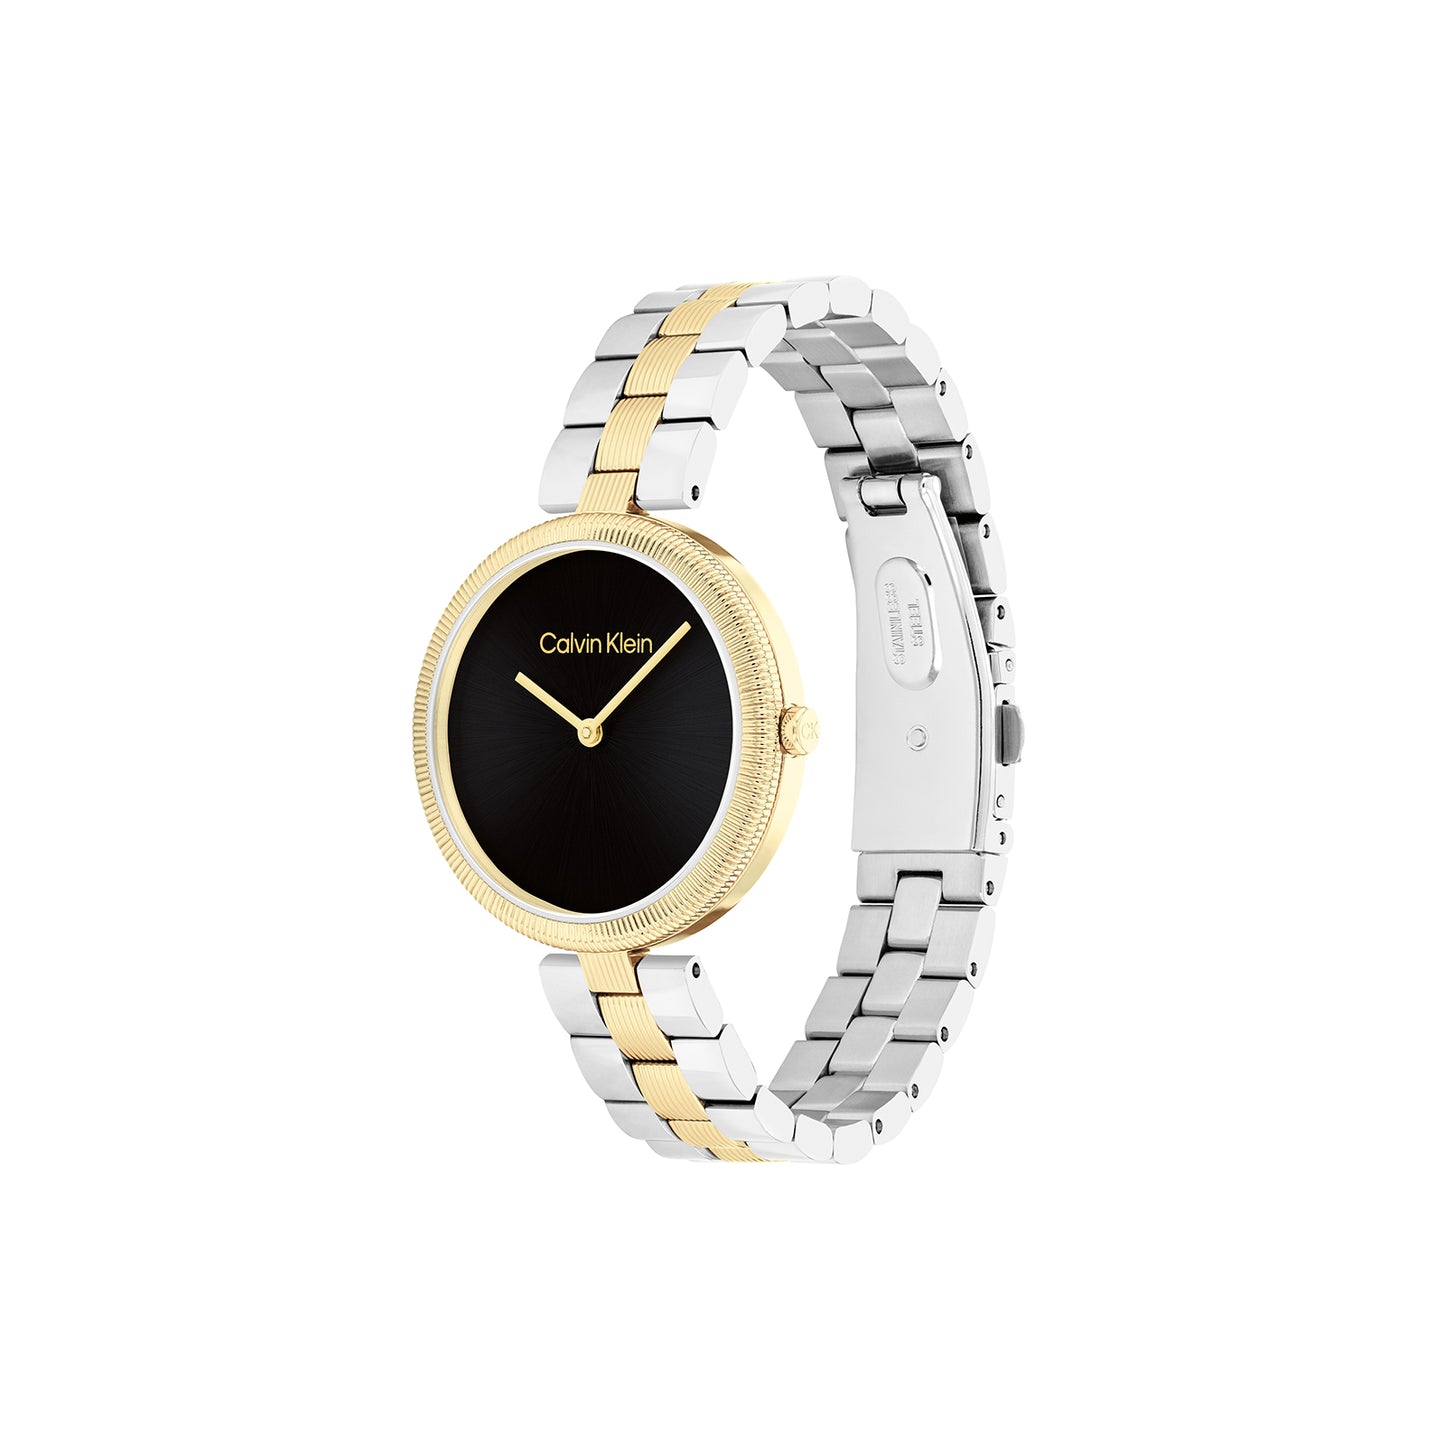 Calvin Klein 25100012 Women's Two-Tone Steel Watch